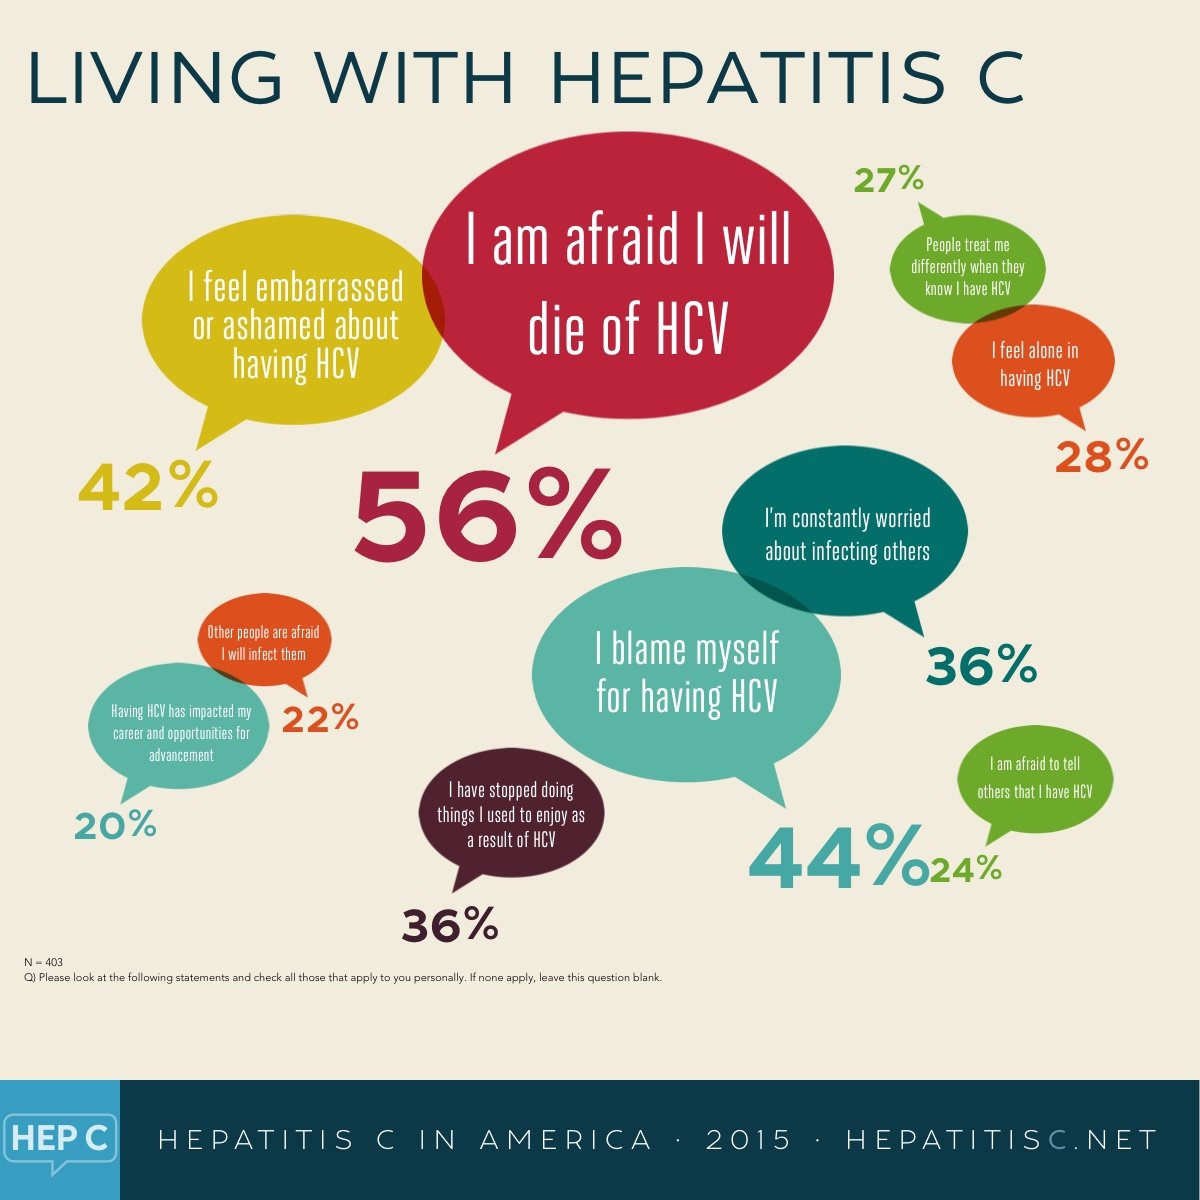 Hepatitis C Makes Me Feel......